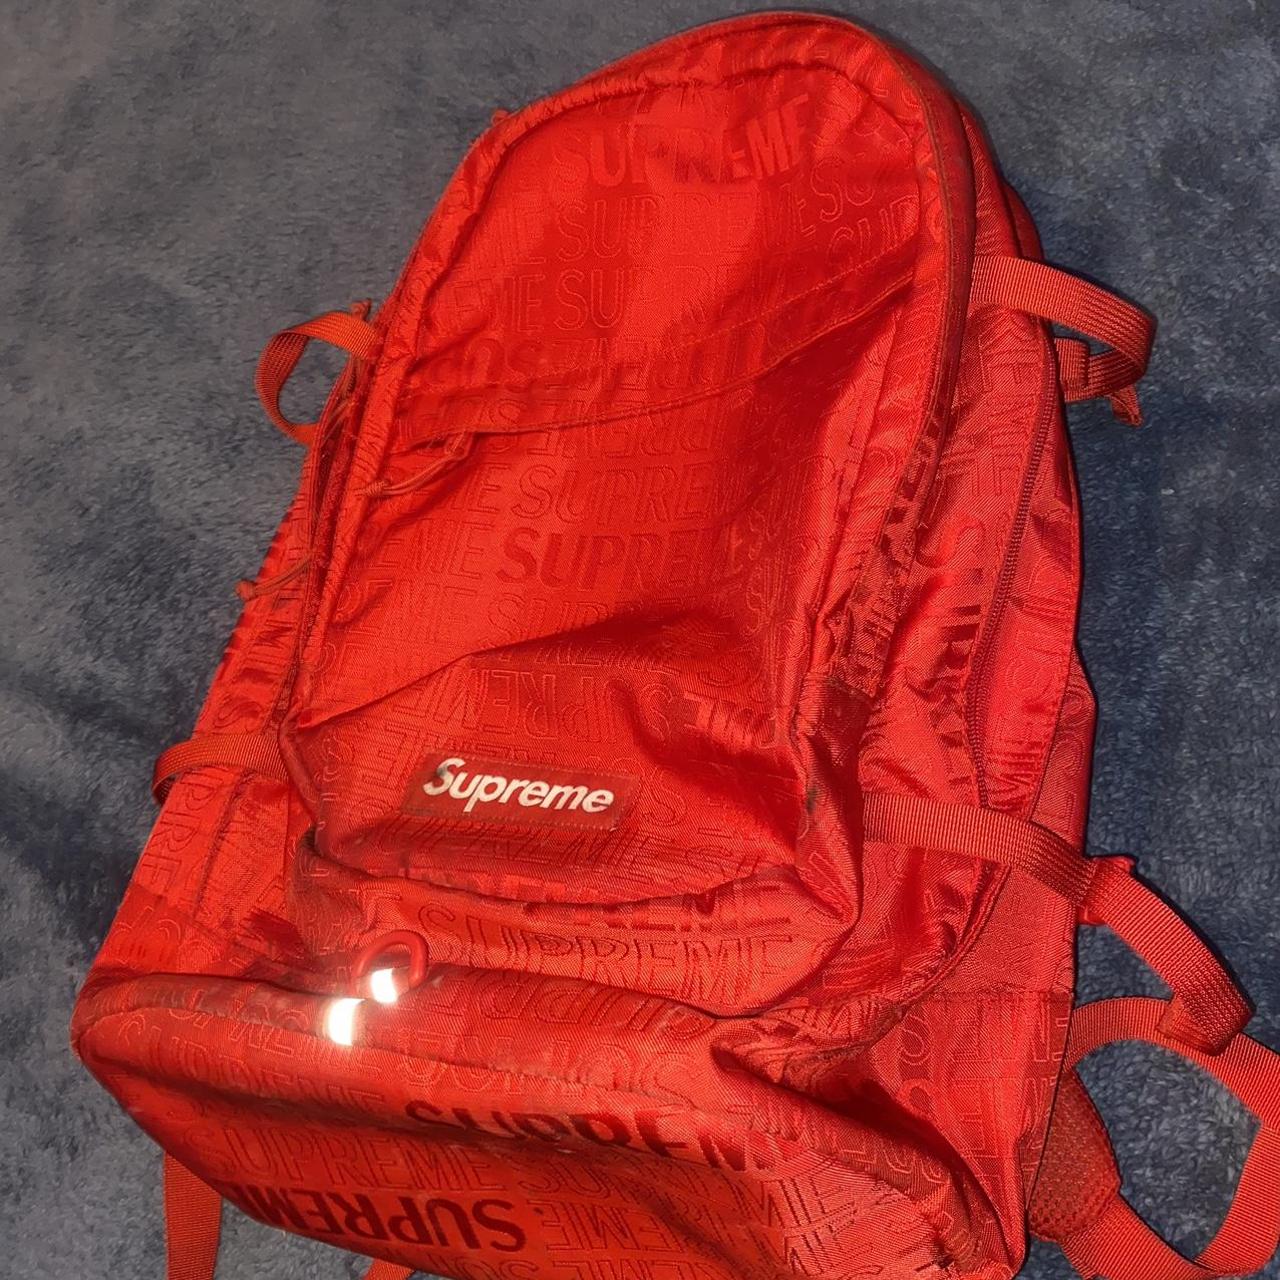 red Supreme backpack - Depop